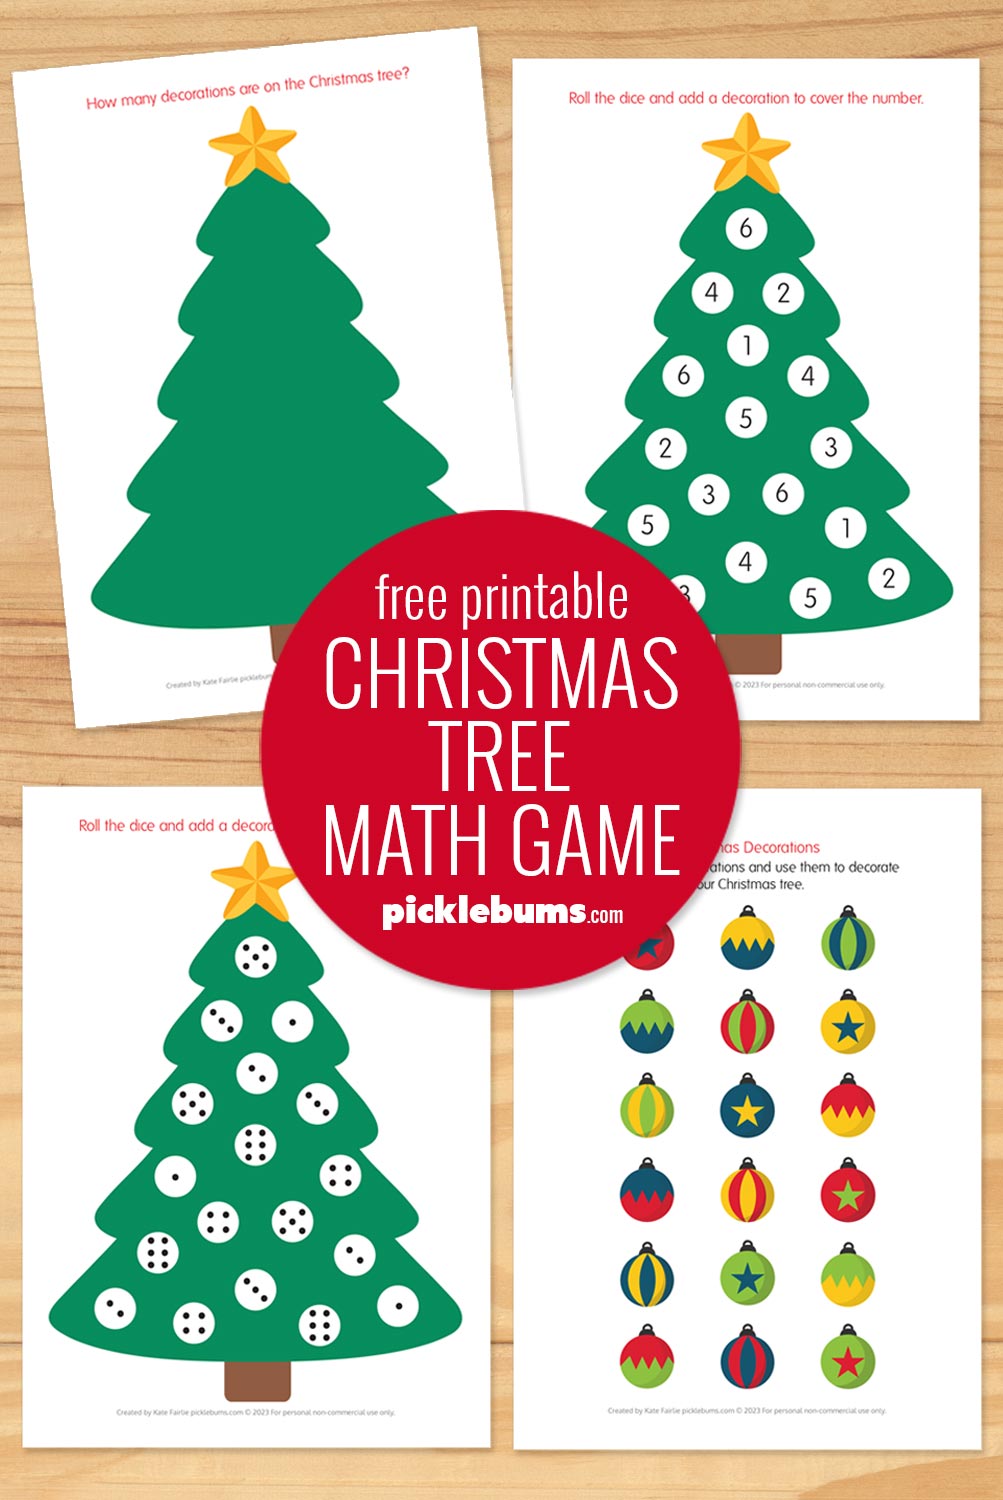 free printable Christmas tree math game mats